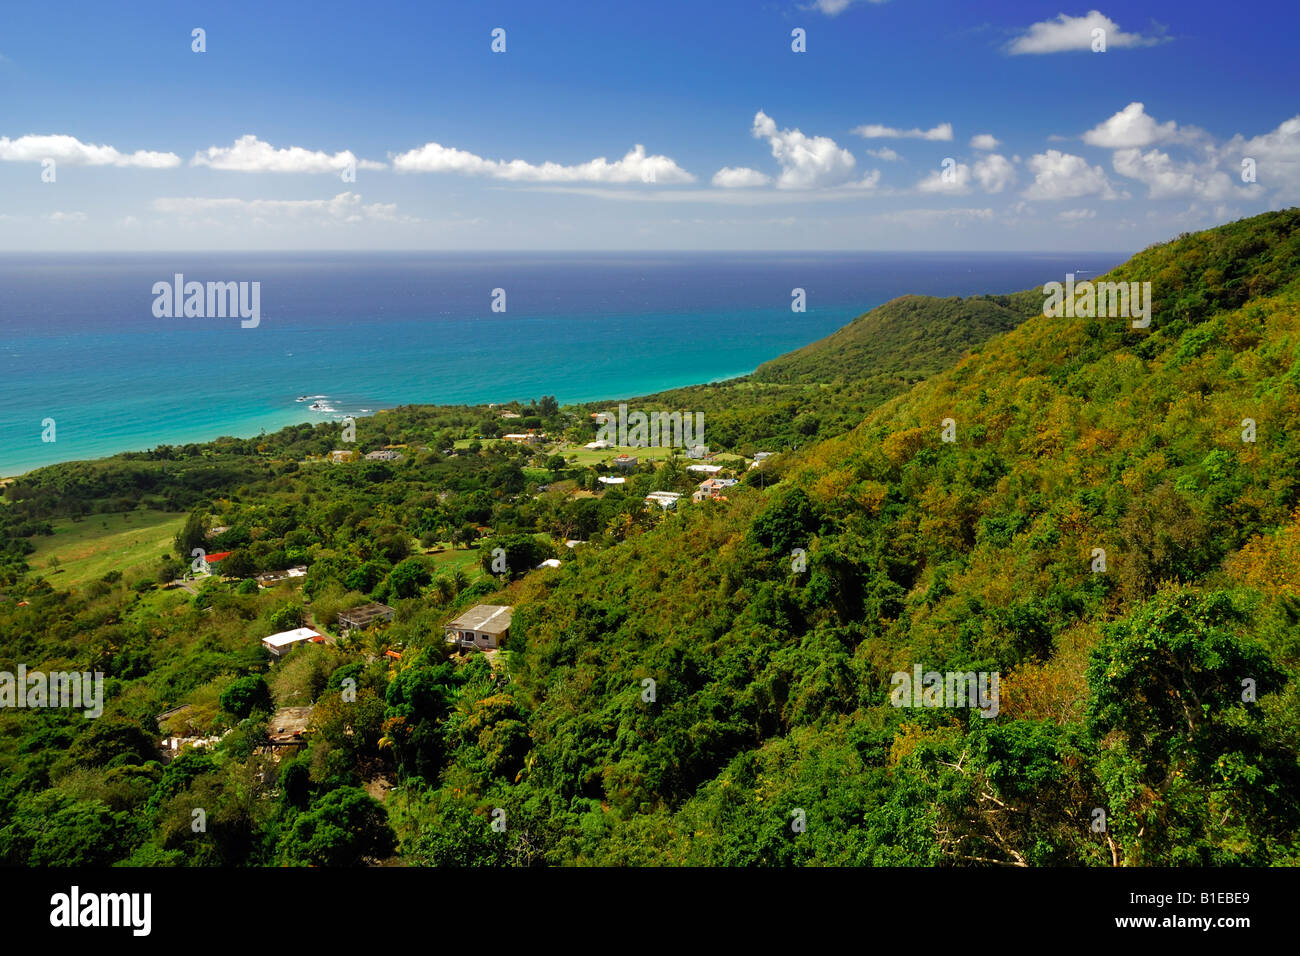 Vue sur la côte à Punta Yeguas et le sud-est de la mer des Caraïbes près de Yabucoa, Puerto Rico Banque D'Images